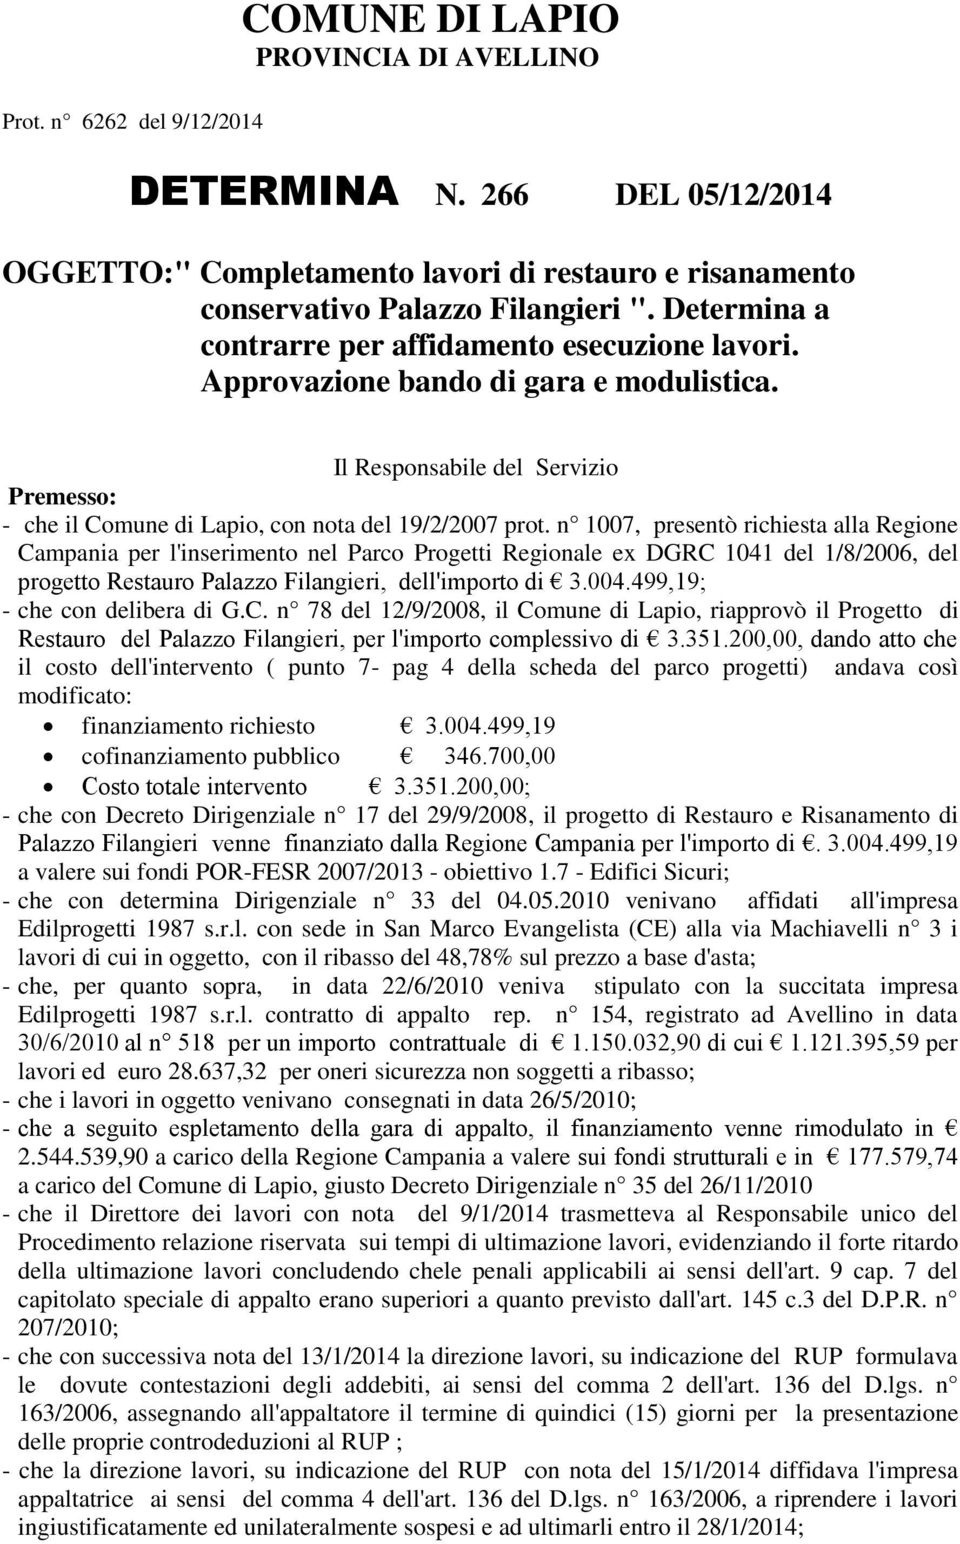 n 1007, presentò richiesta alla Regione Campania per l'inserimento nel Parco Progetti Regionale ex DGRC 1041 del 1/8/2006, del progetto Restauro Palazzo Filangieri, dell'importo di 3.004.